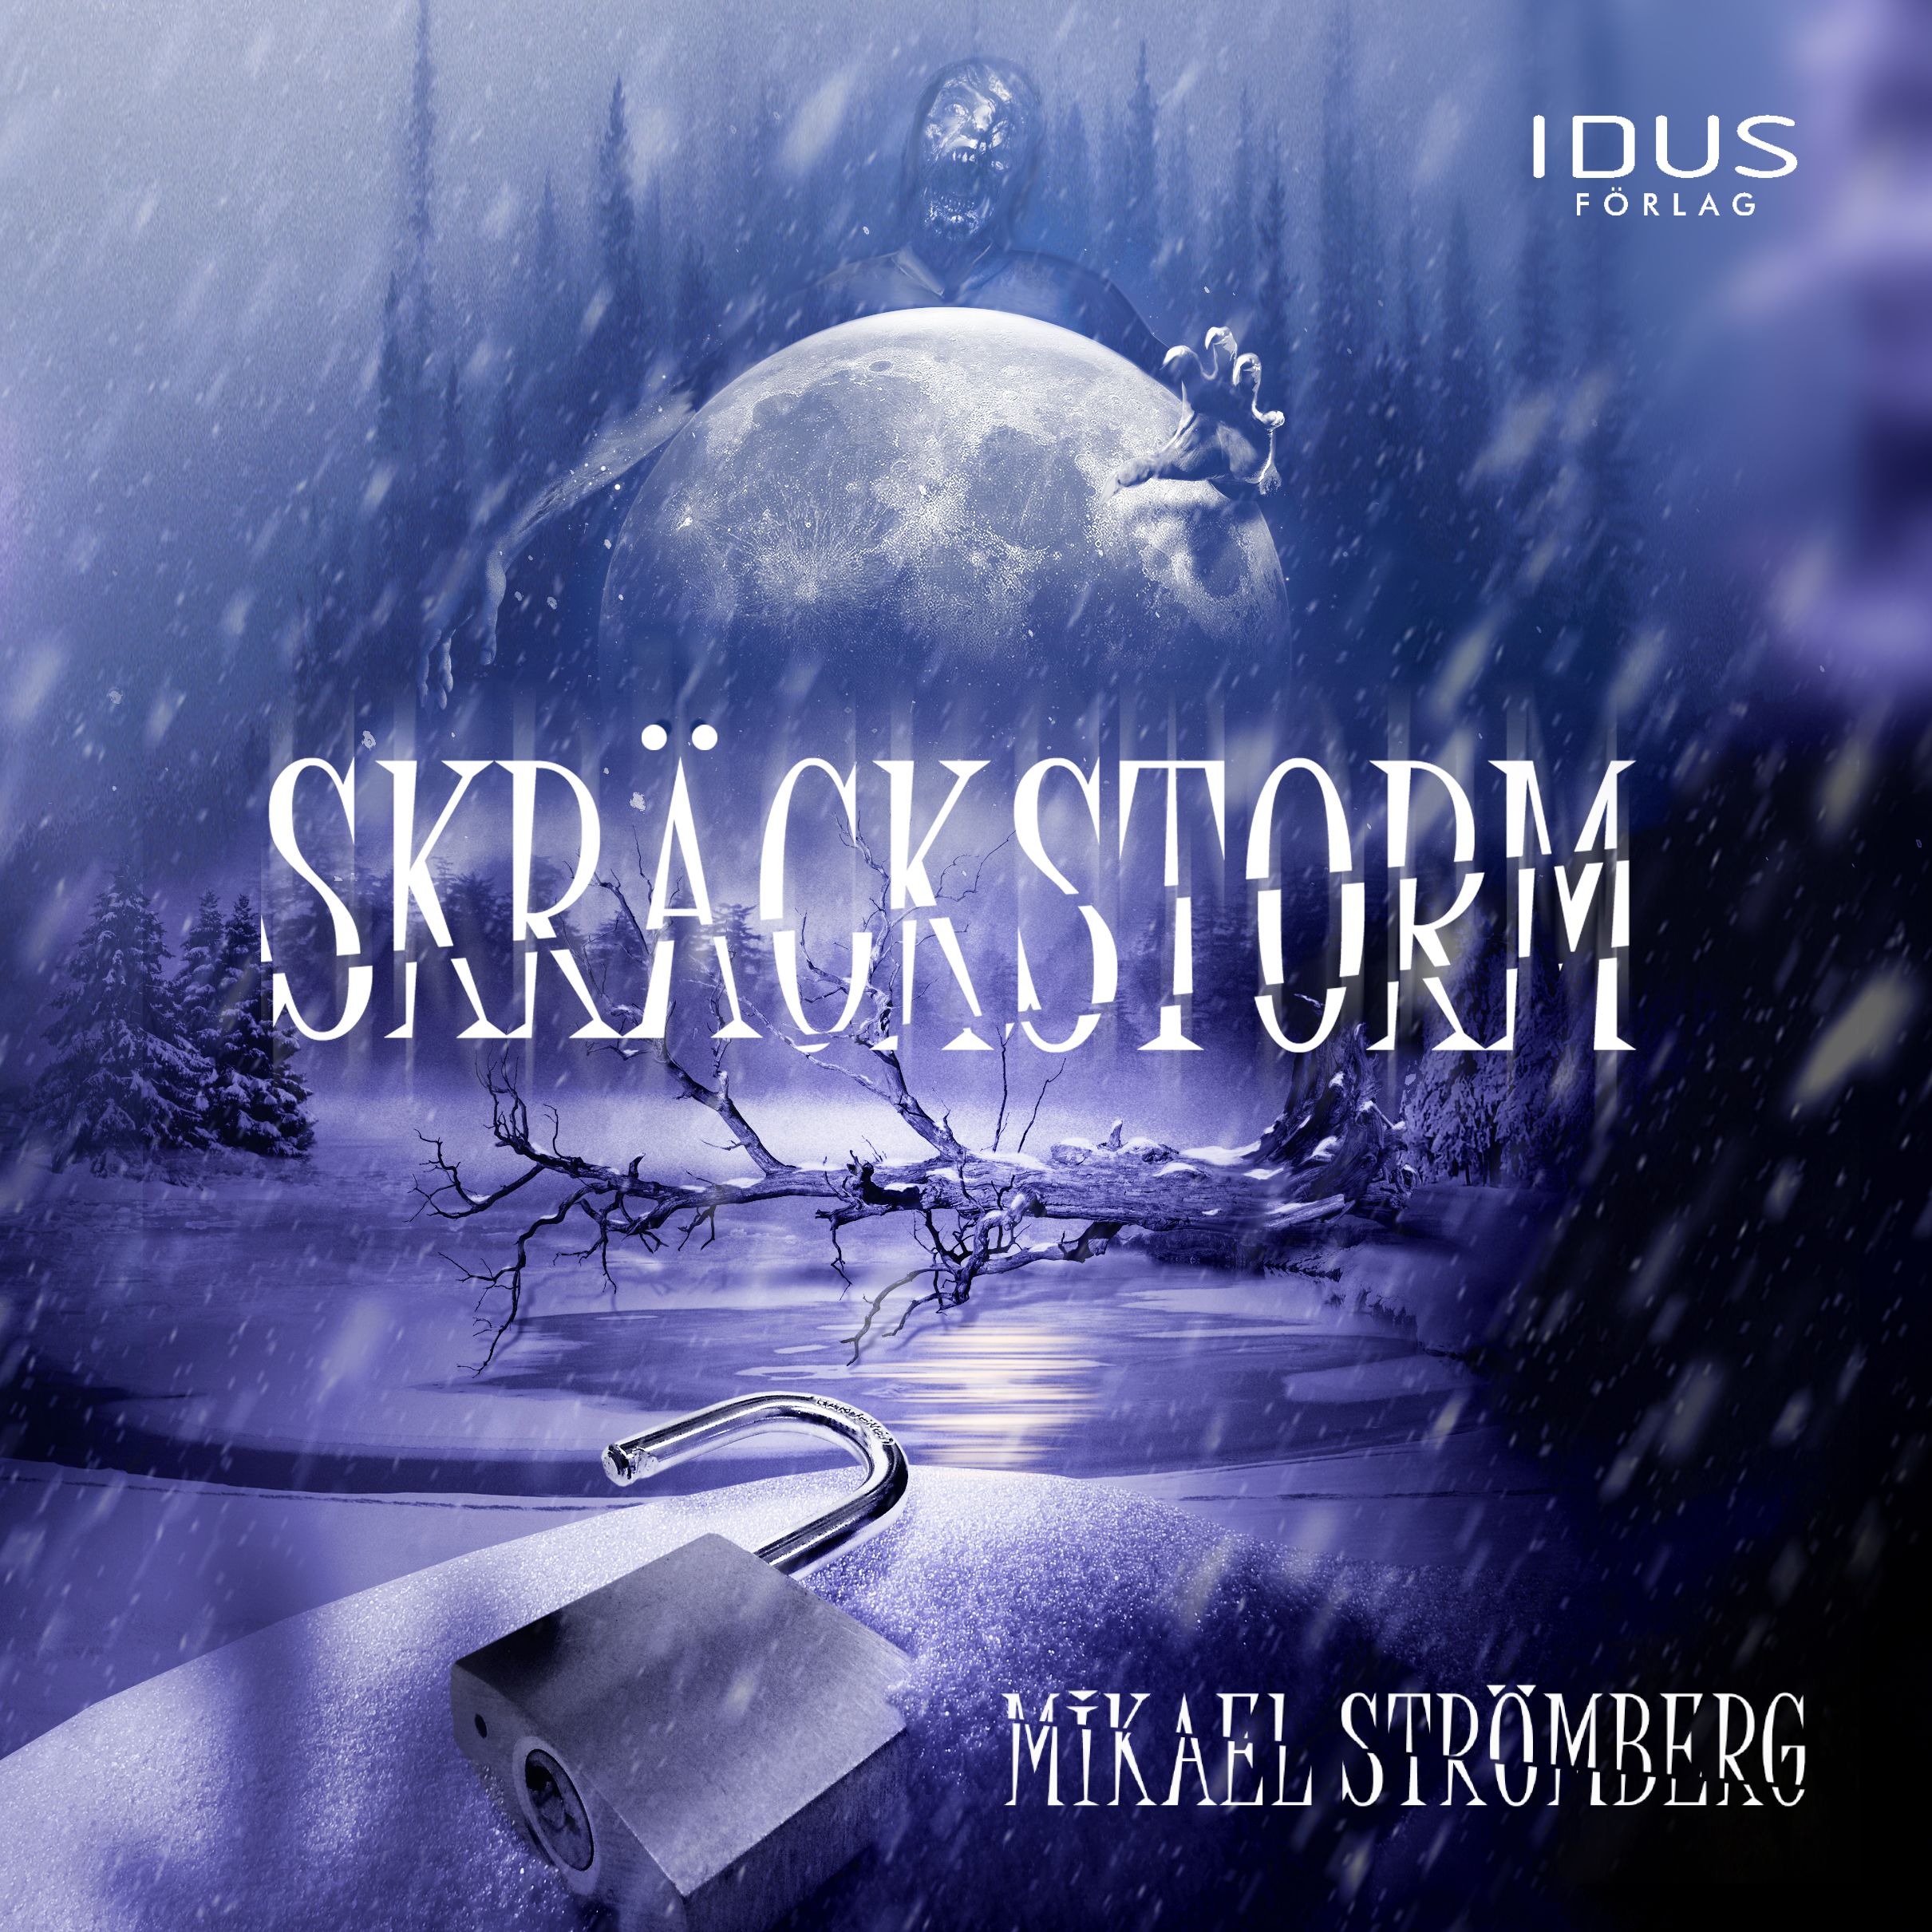 Skräckstorm, audiobook by Mikael Strömberg